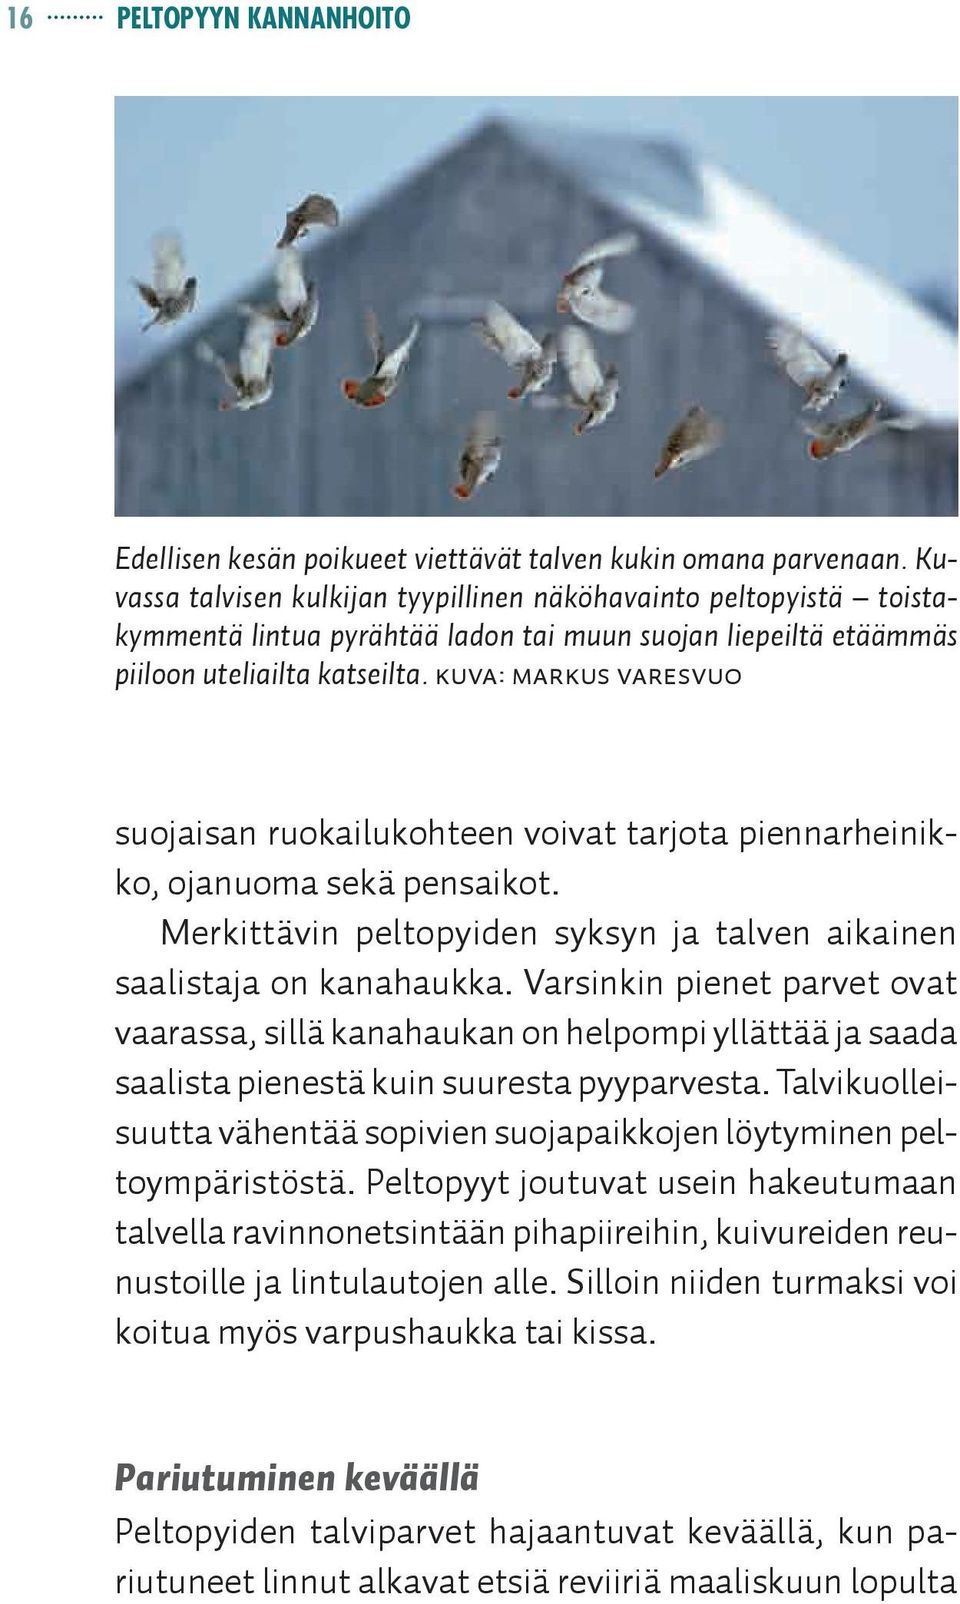 Kuva: Markus Varesvuo suojaisan ruokailukohteen voivat tarjota piennarheinikko, ojanuoma sekä pensaikot. Merkittävin peltopyiden syksyn ja talven aikainen saalistaja on kanahaukka.